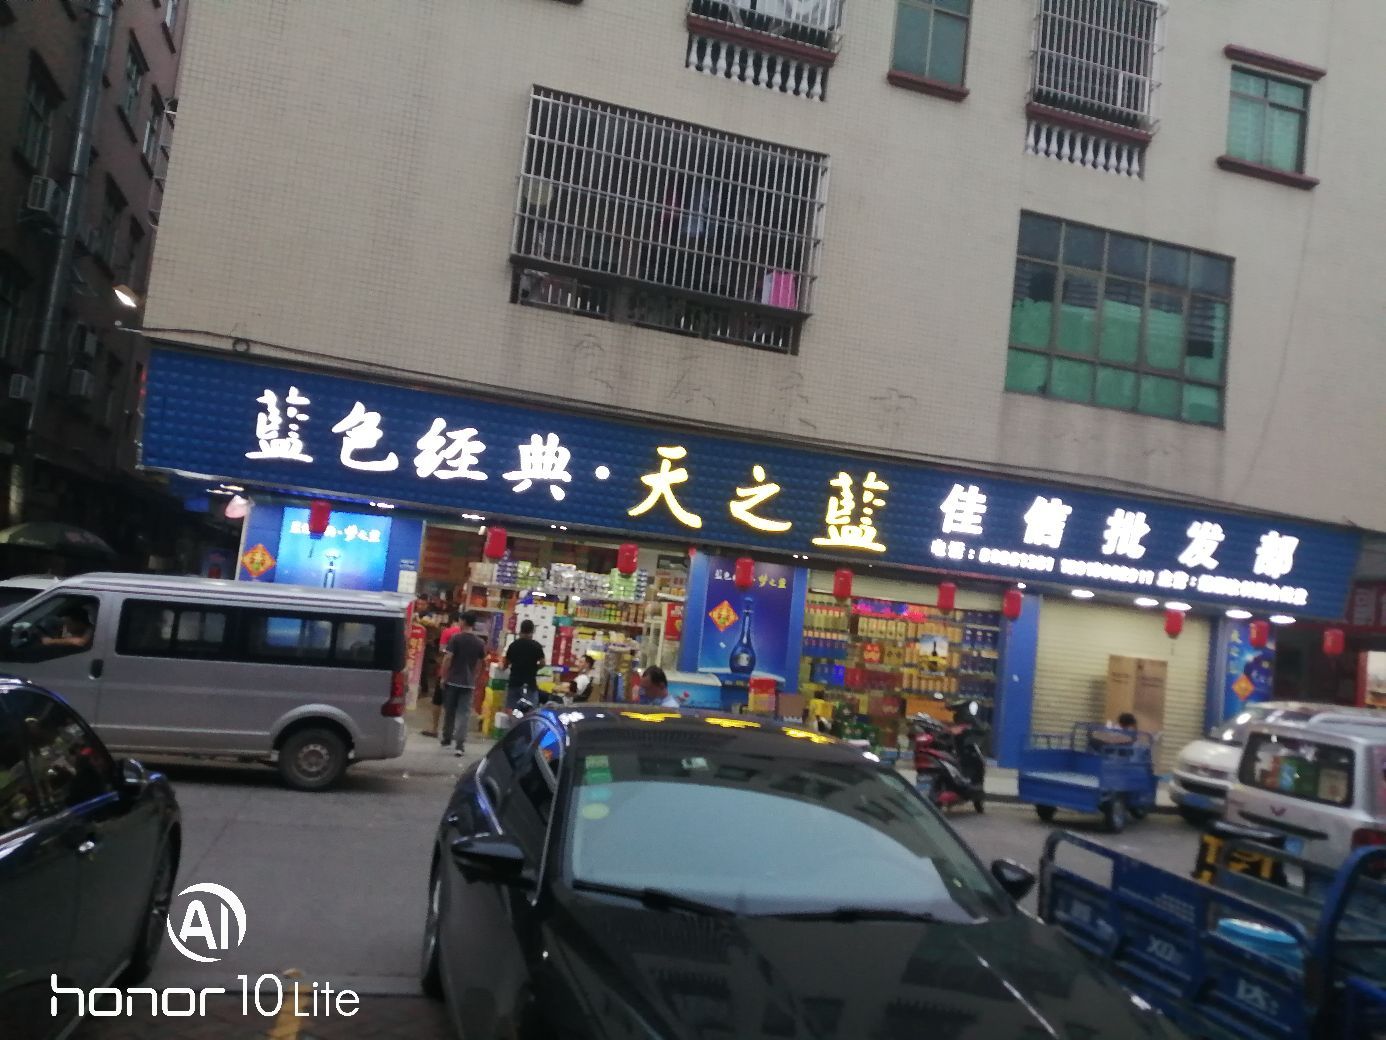 蓝色经典.天之蓝佳信批发部，位于广东省东莞市沙田镇美食街。这里，批发各种各样的食品，物美价廉，很受顾